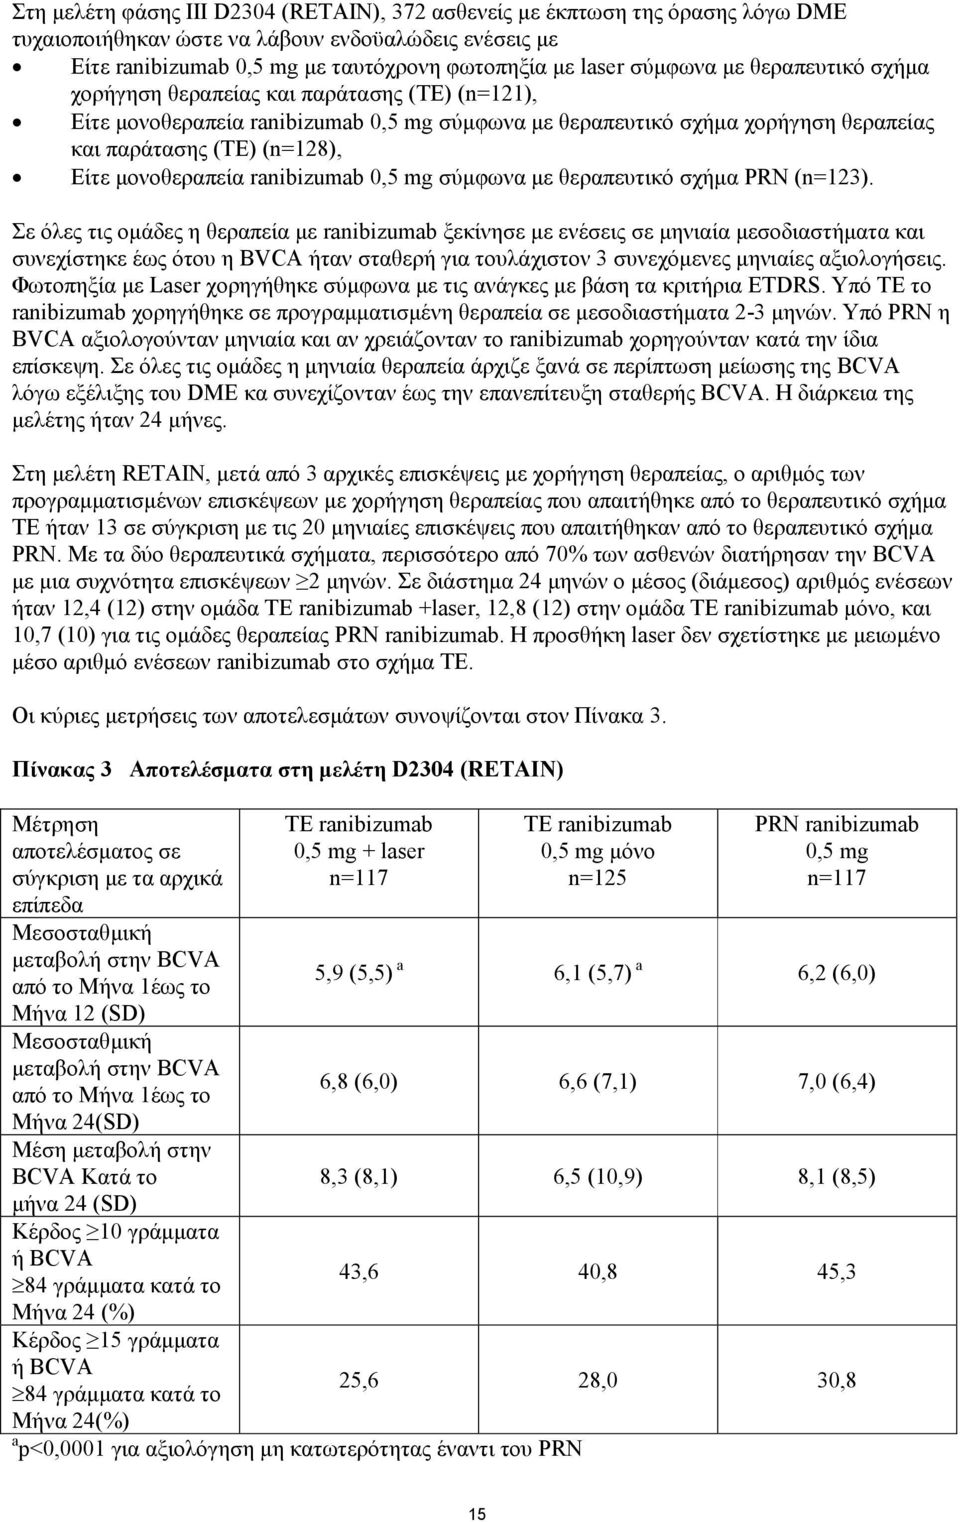 μονοθεραπεία ranibizumab 0,5 mg σύμφωνα με θεραπευτικό σχήμα PRN (n=123).